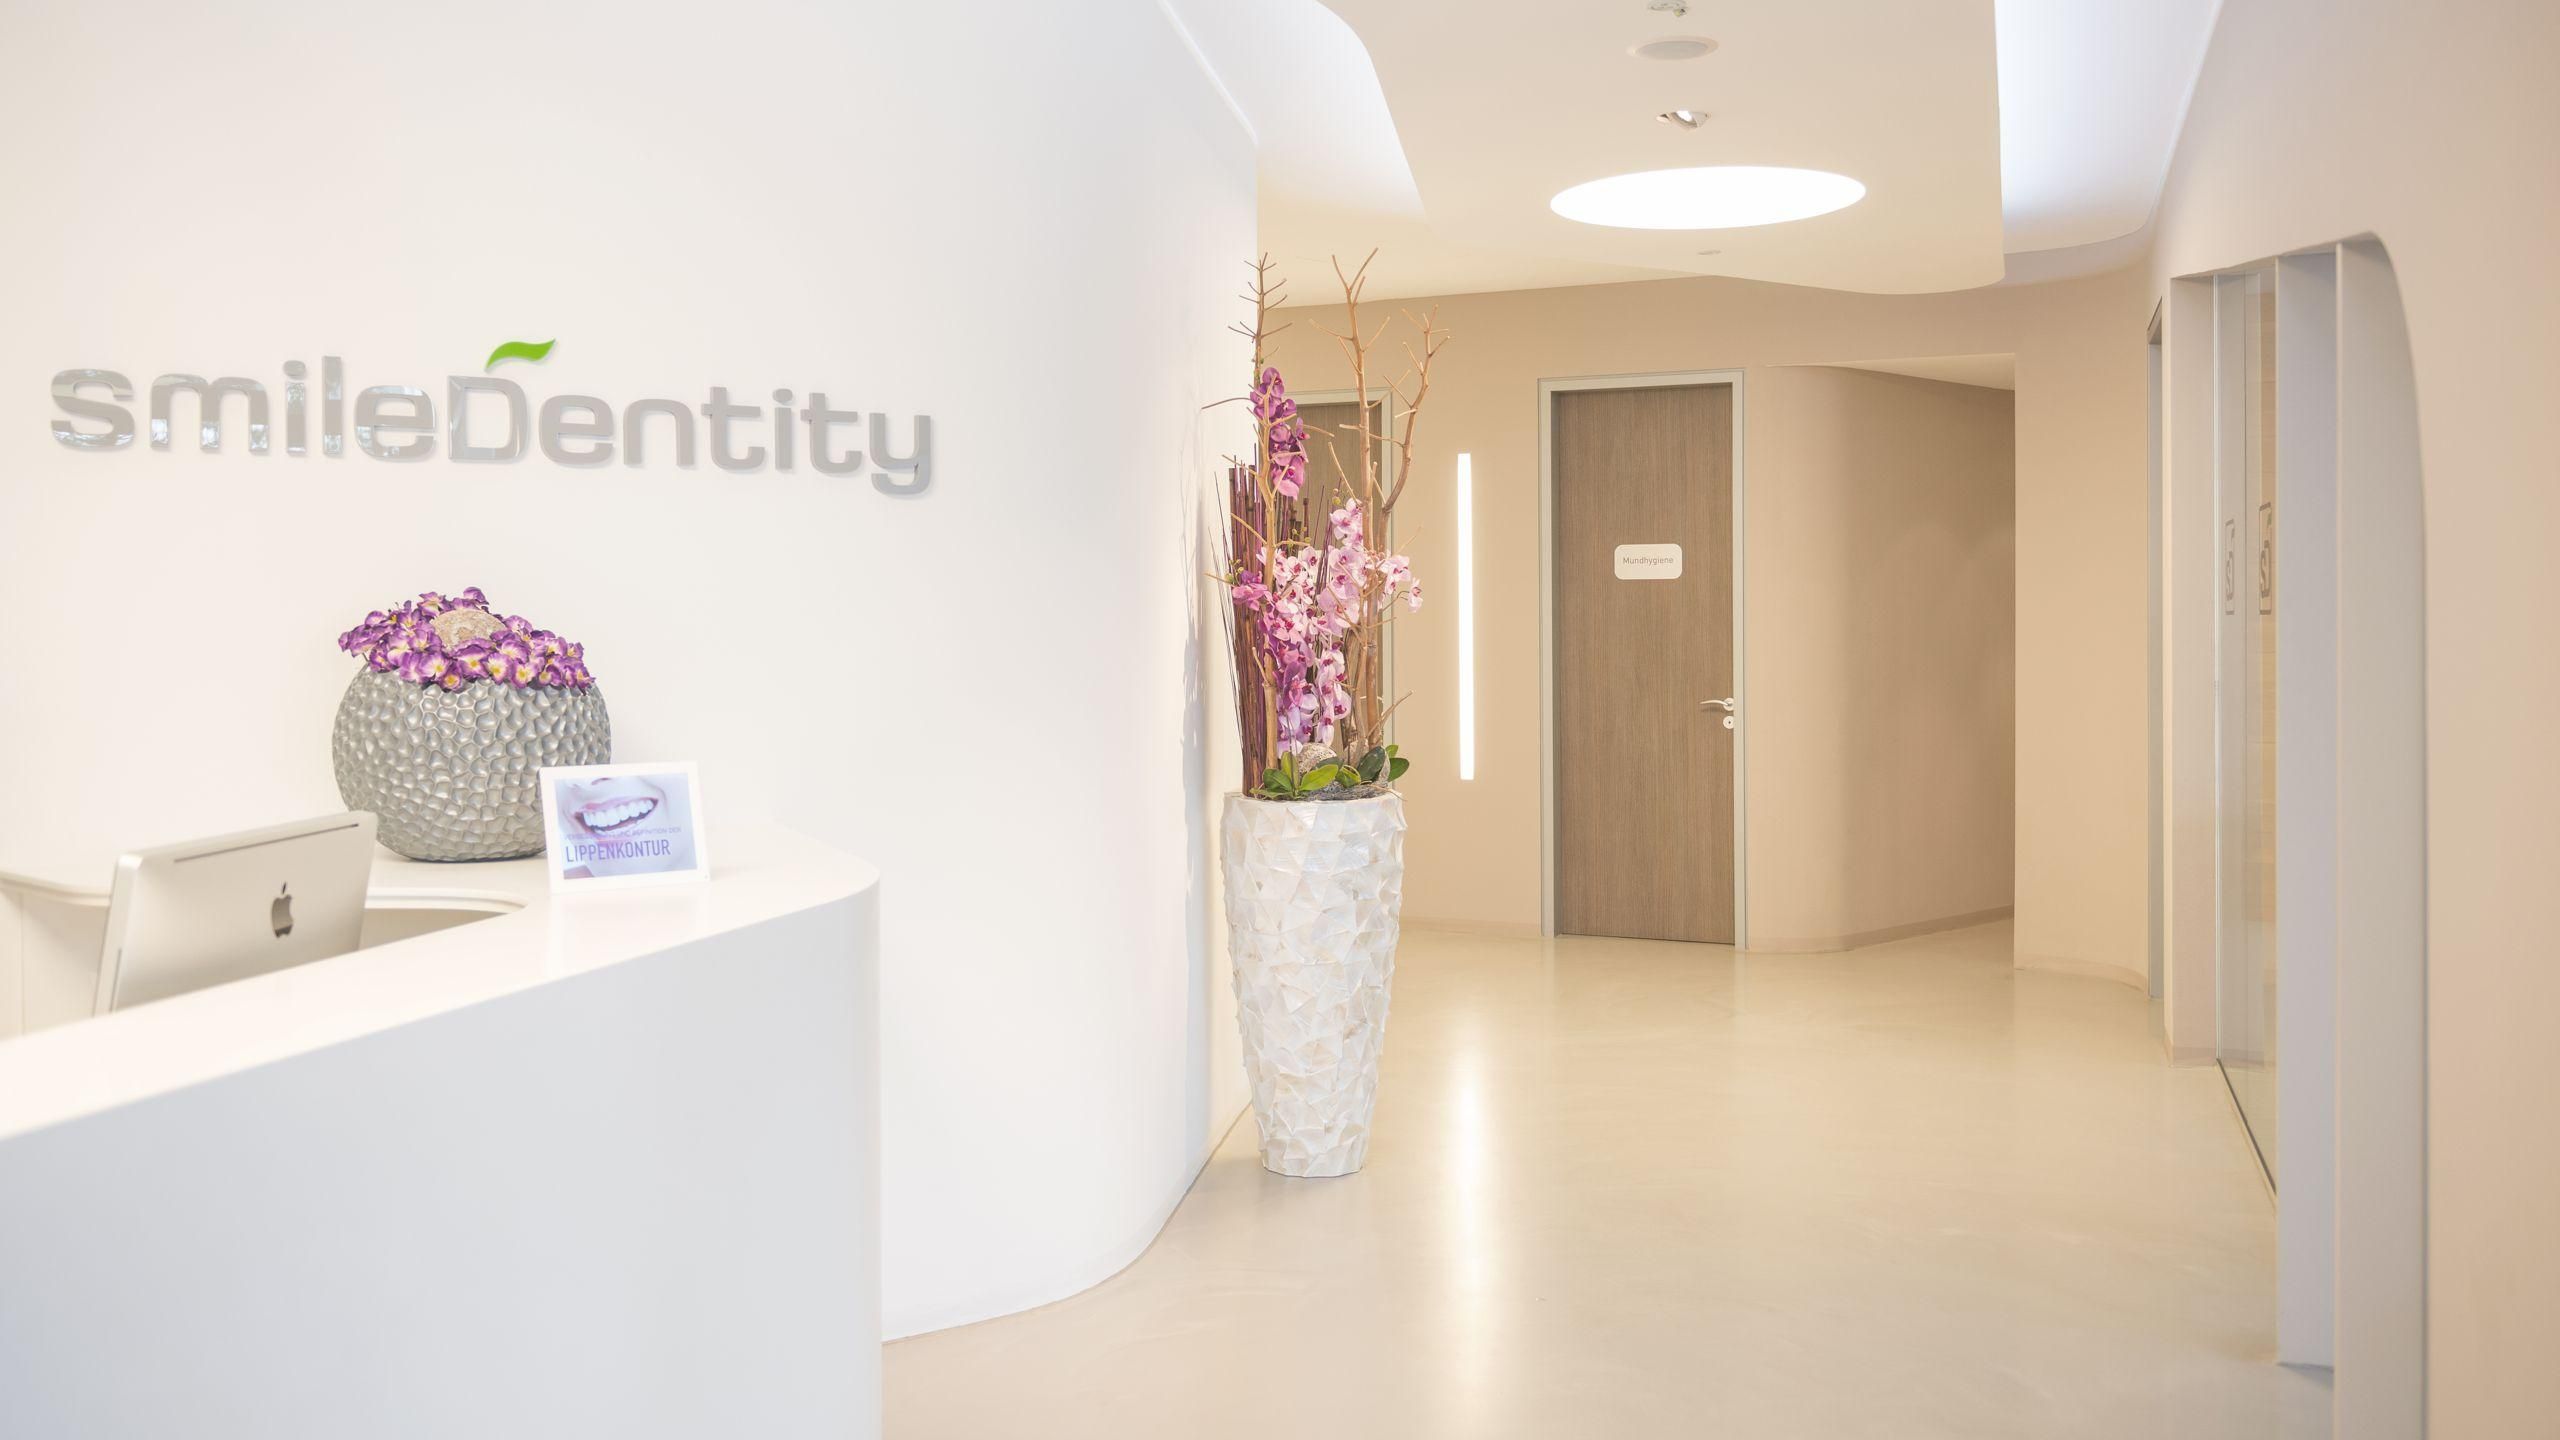 smileDentity - Your dentist in Dreieich - Welcome